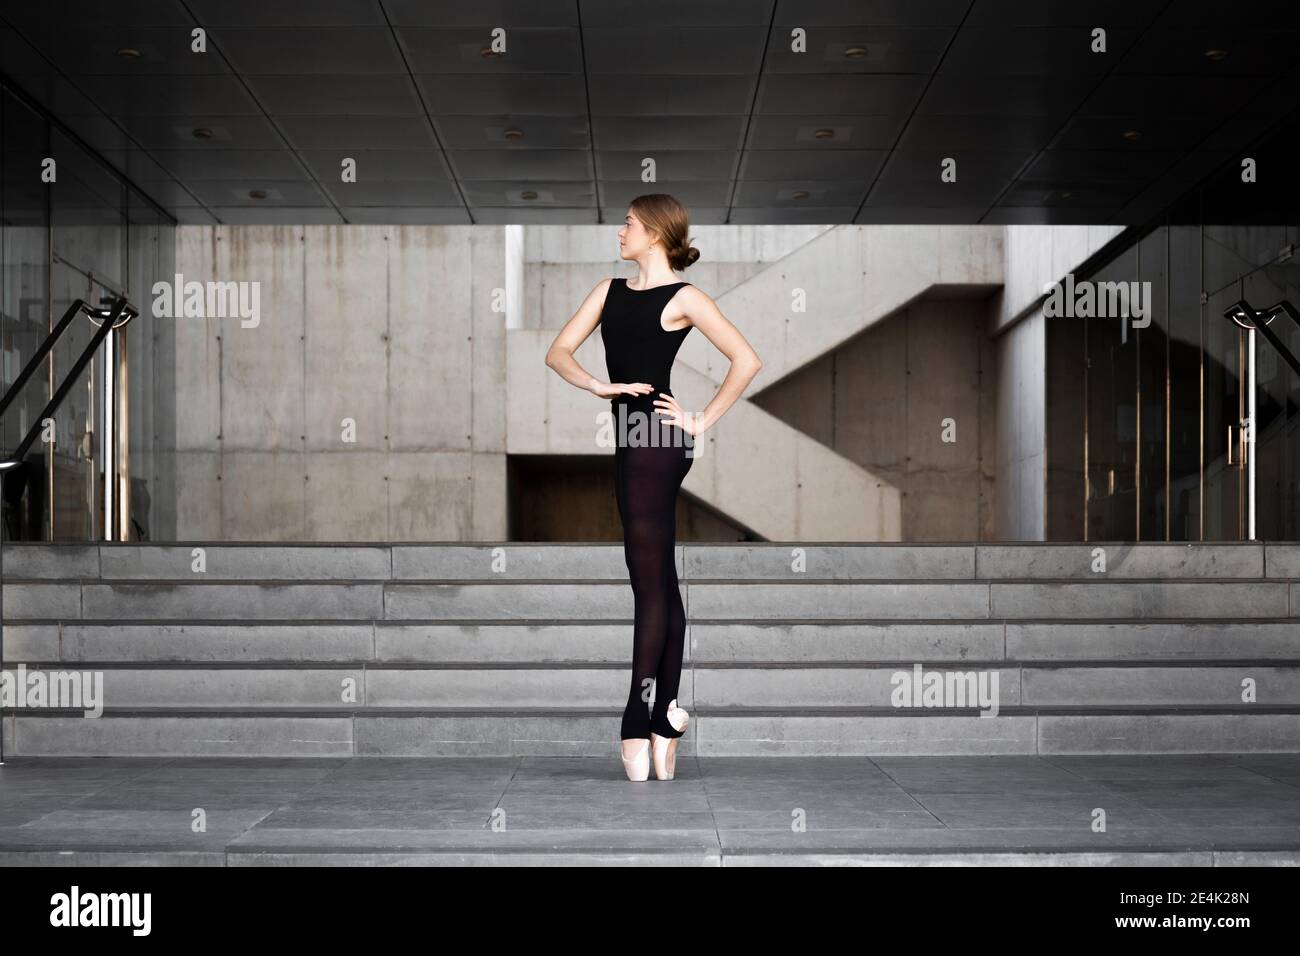 Ballerina in black leotard in modern concrete building Stock Photo